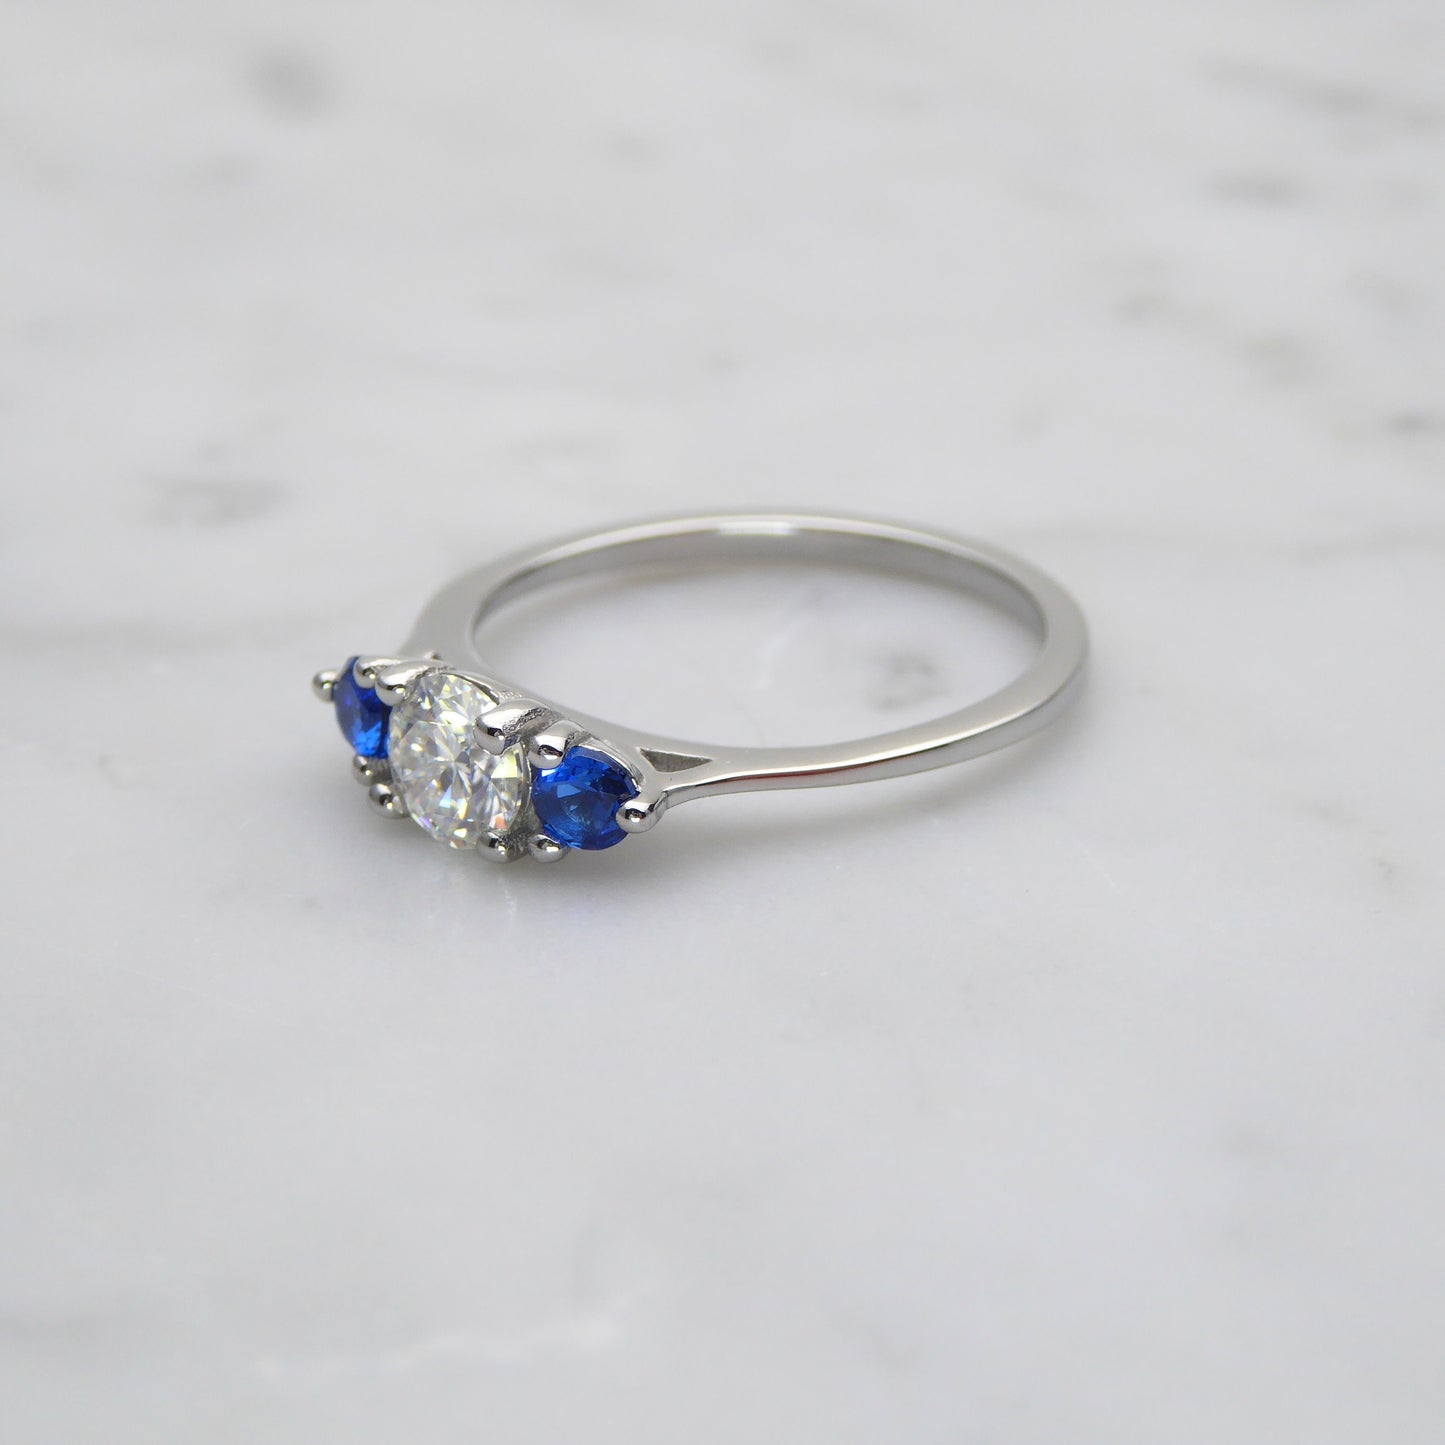 Genuine moissanite & Blue Topaz 3 stone Trilogy Ring in White Gold or Titanium  -  engagement ring - handmade ring